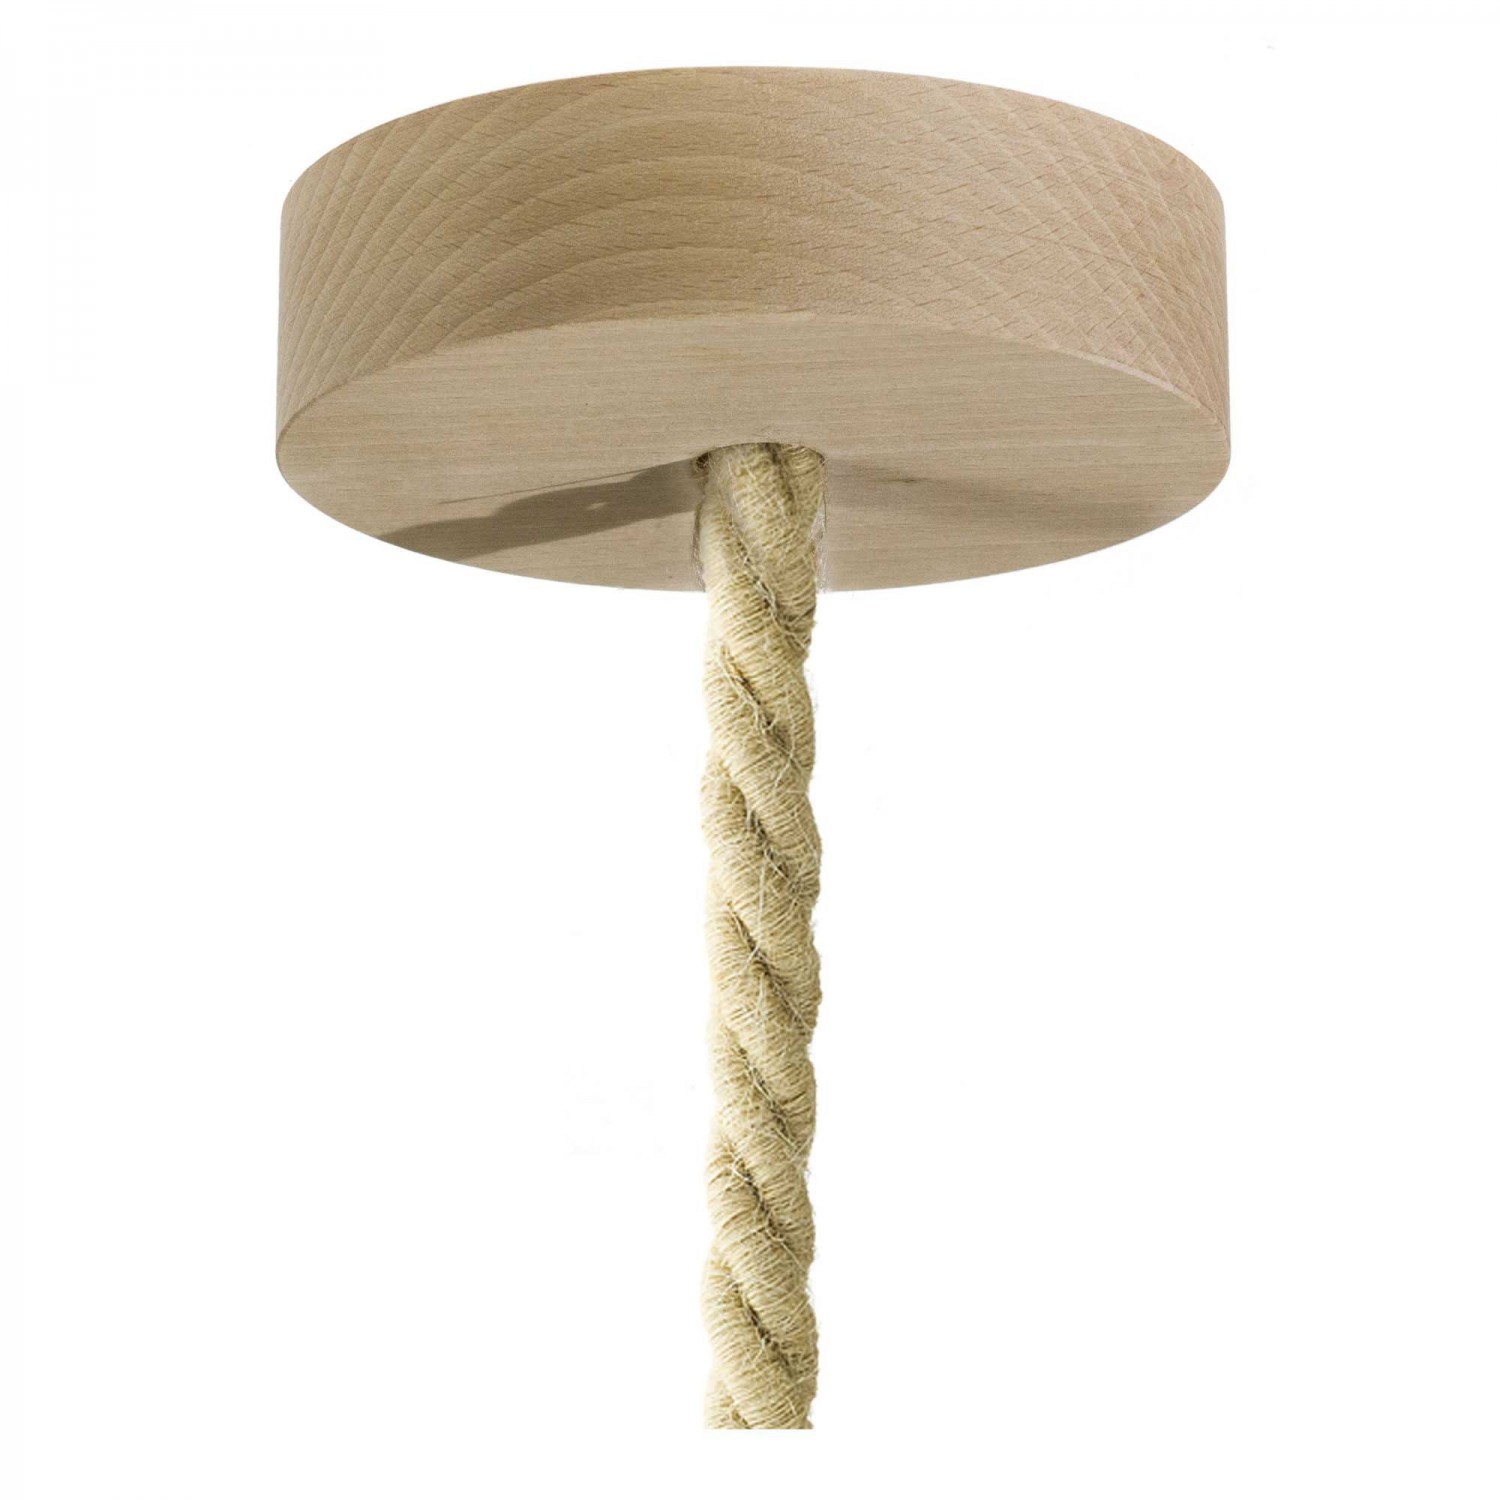 Lámpara colgante hecha en Italia con cordón náutico XL y acabados en madera